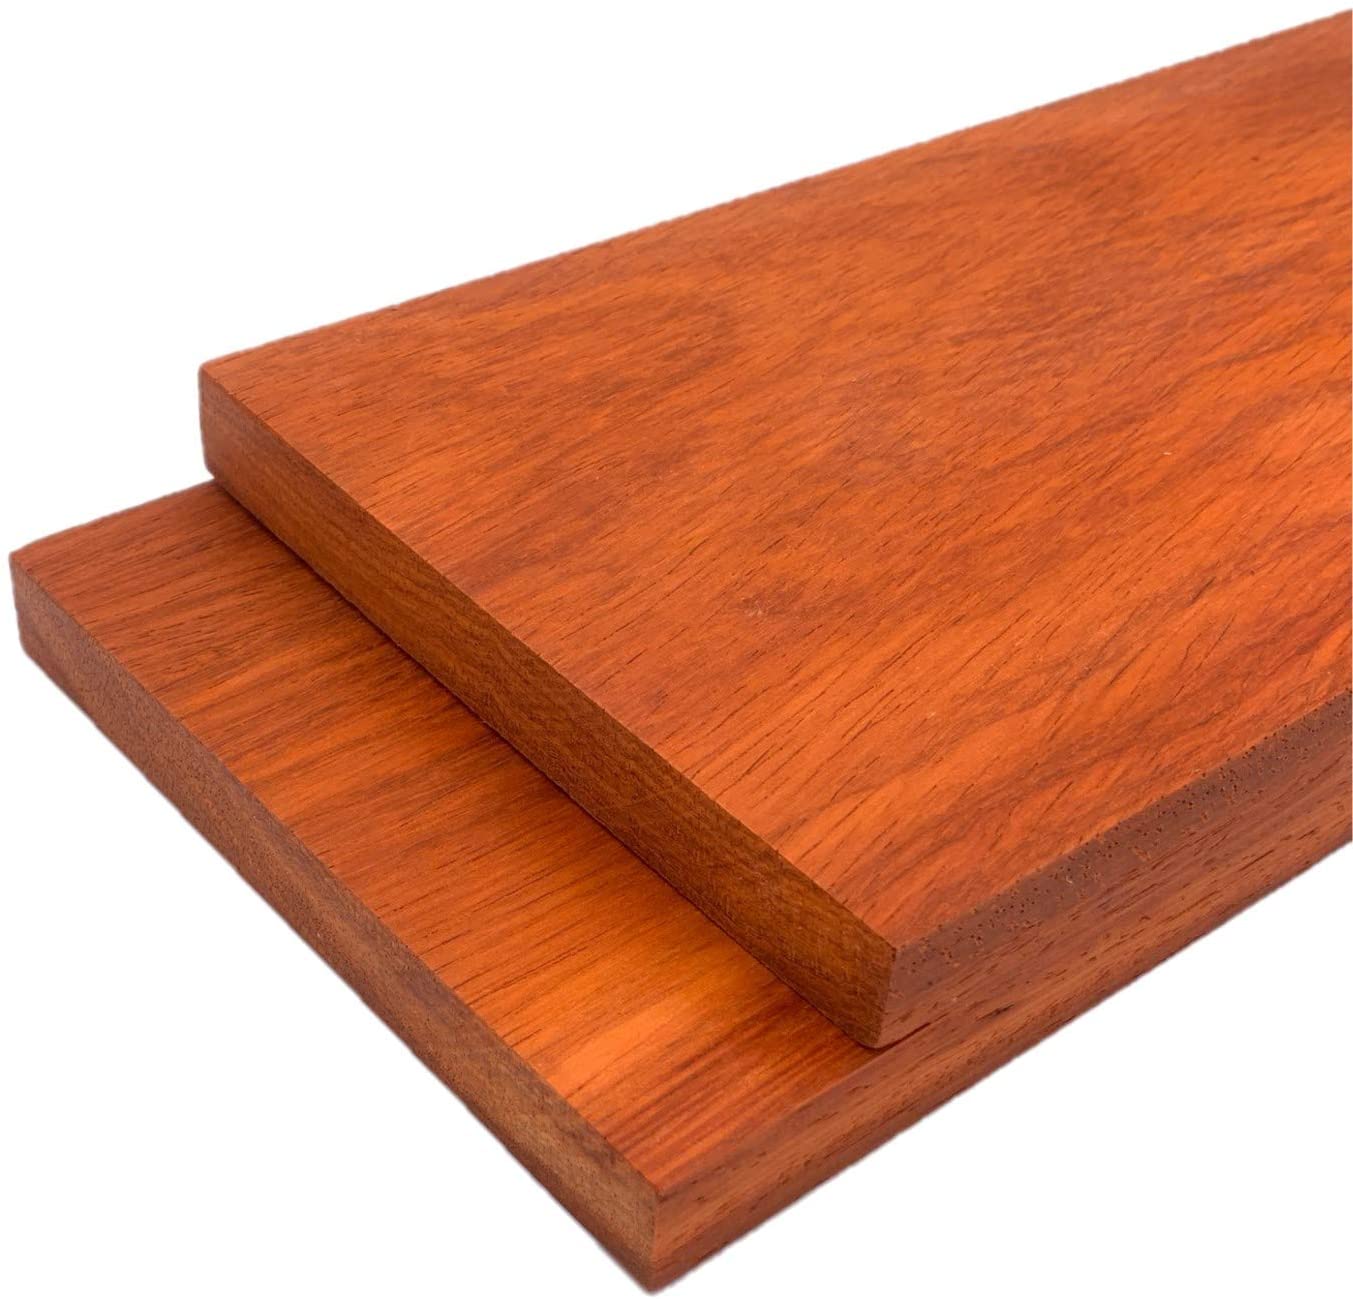 Padauk Lumber Board - 3/4" x 5" (2 pcs)